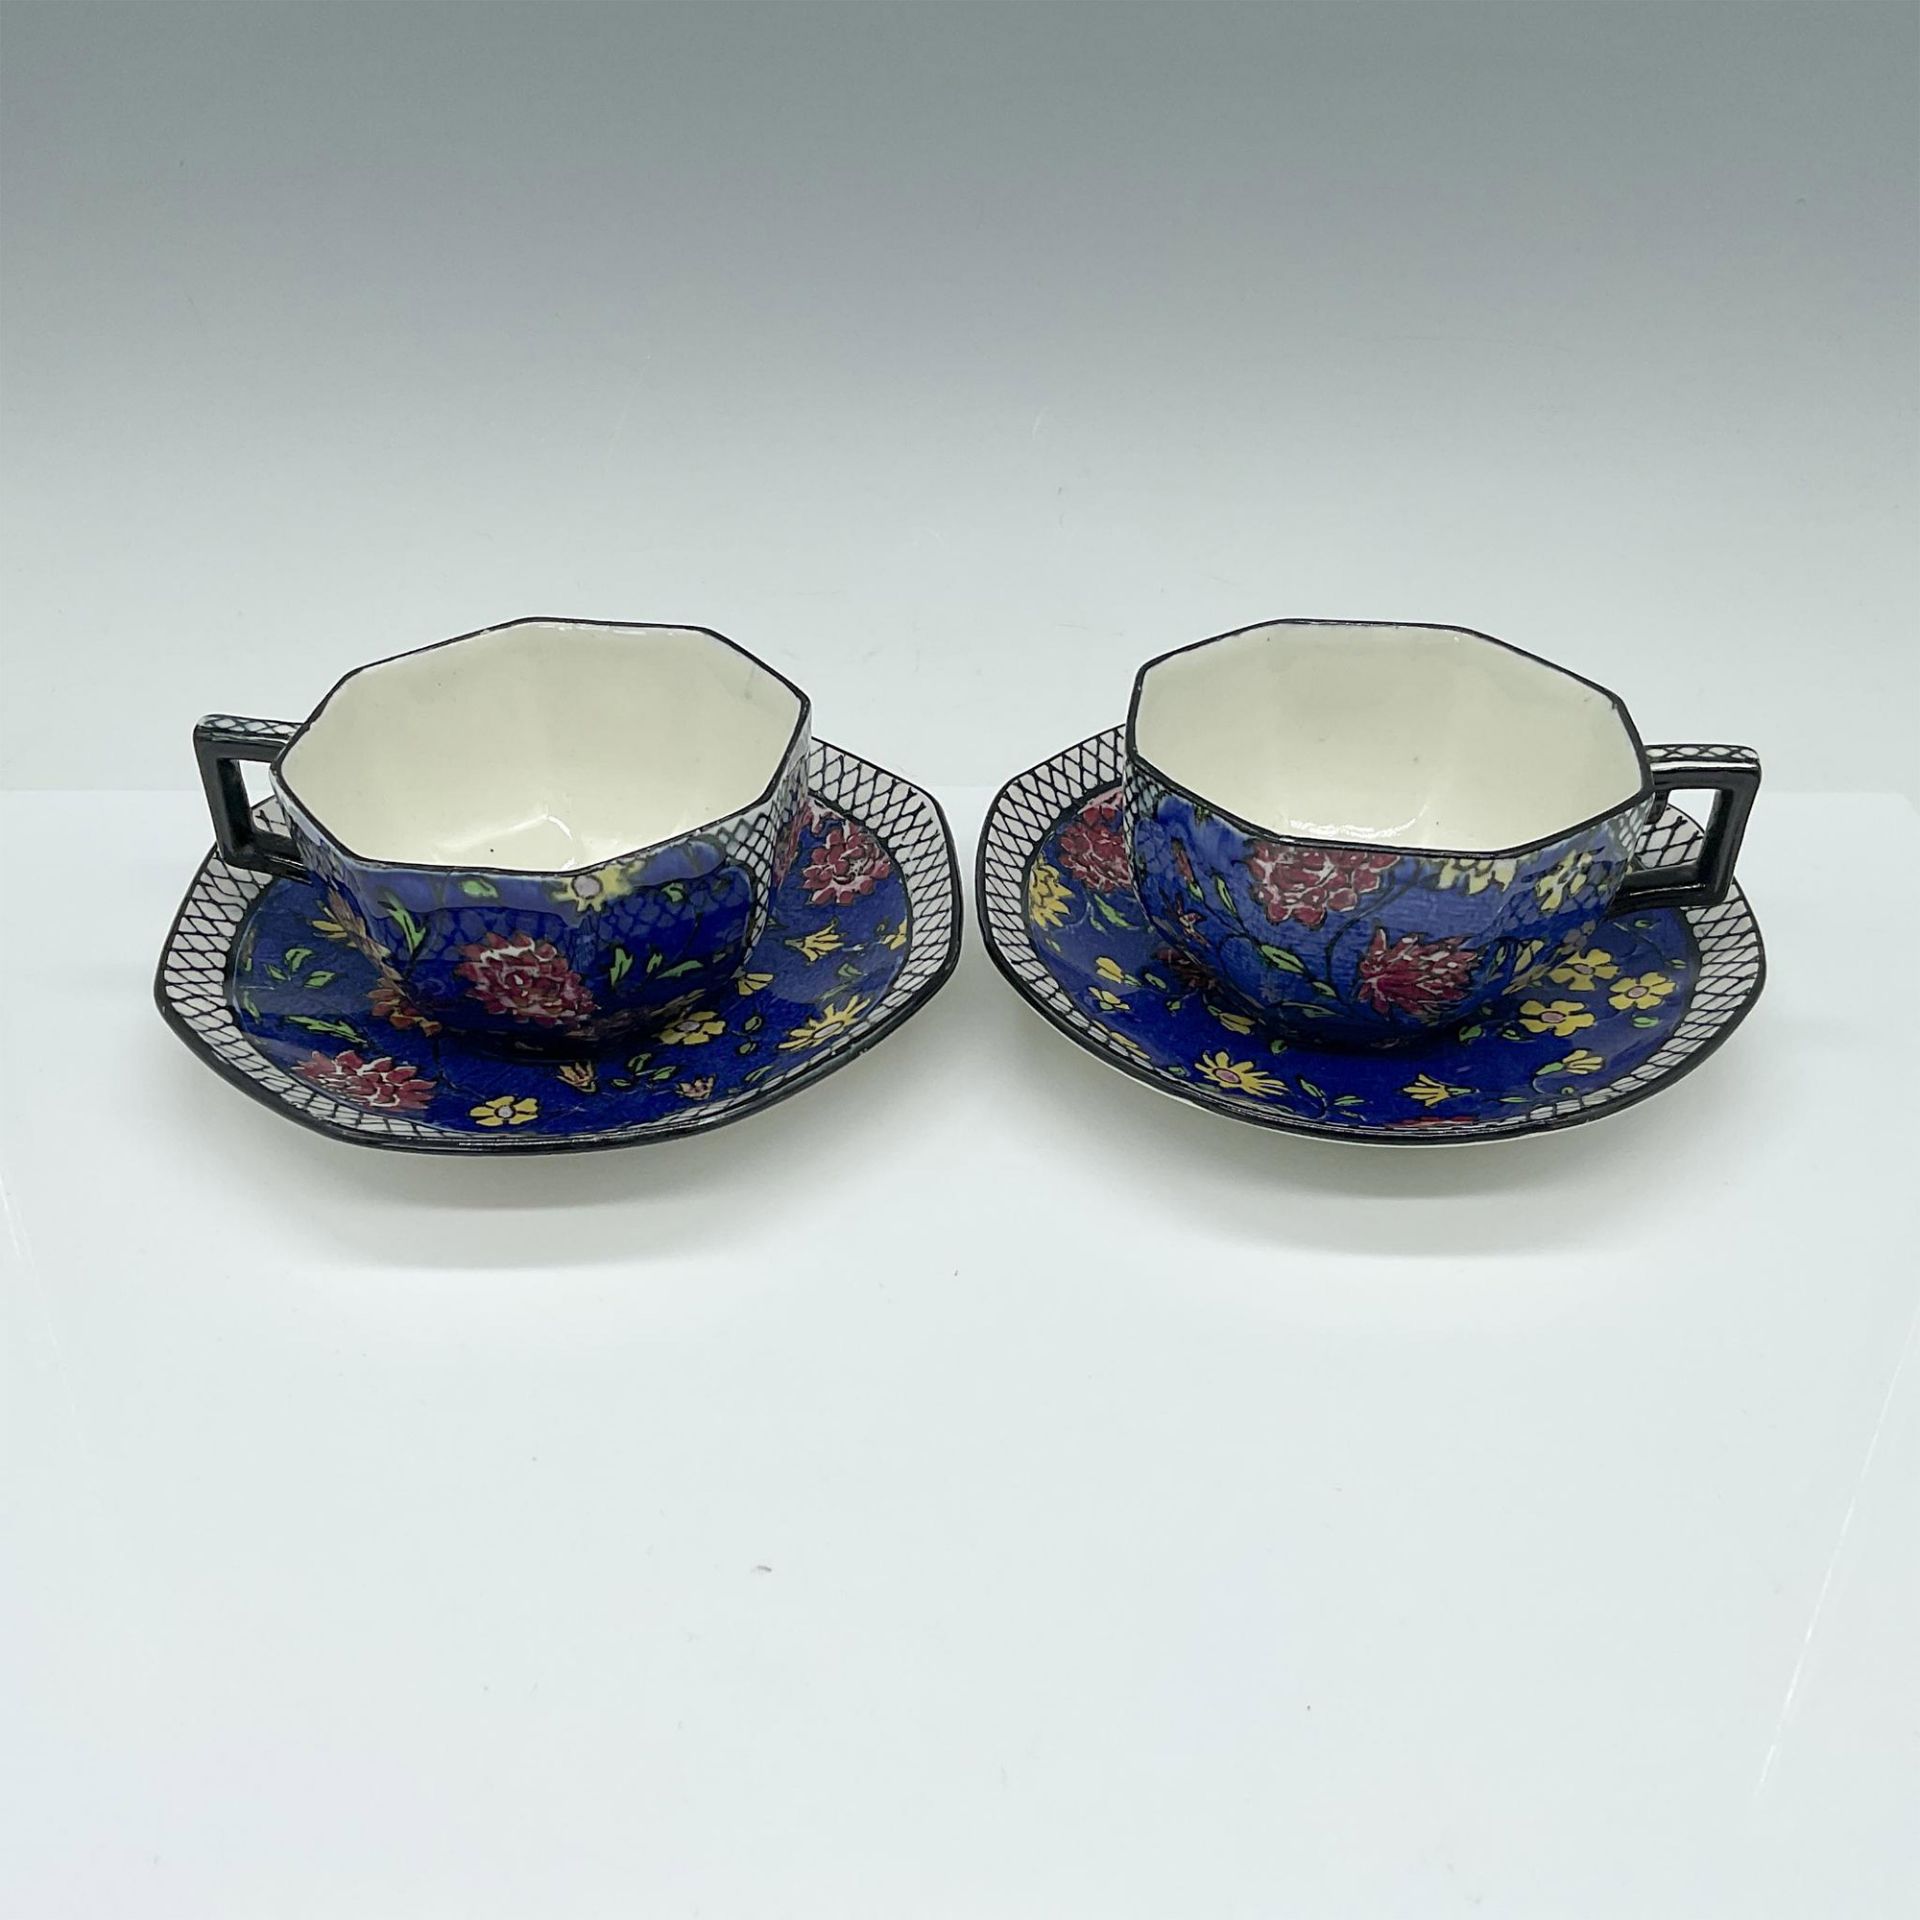 4pc Royal Doulton Teacup & Saucer Set, Persian Anemone